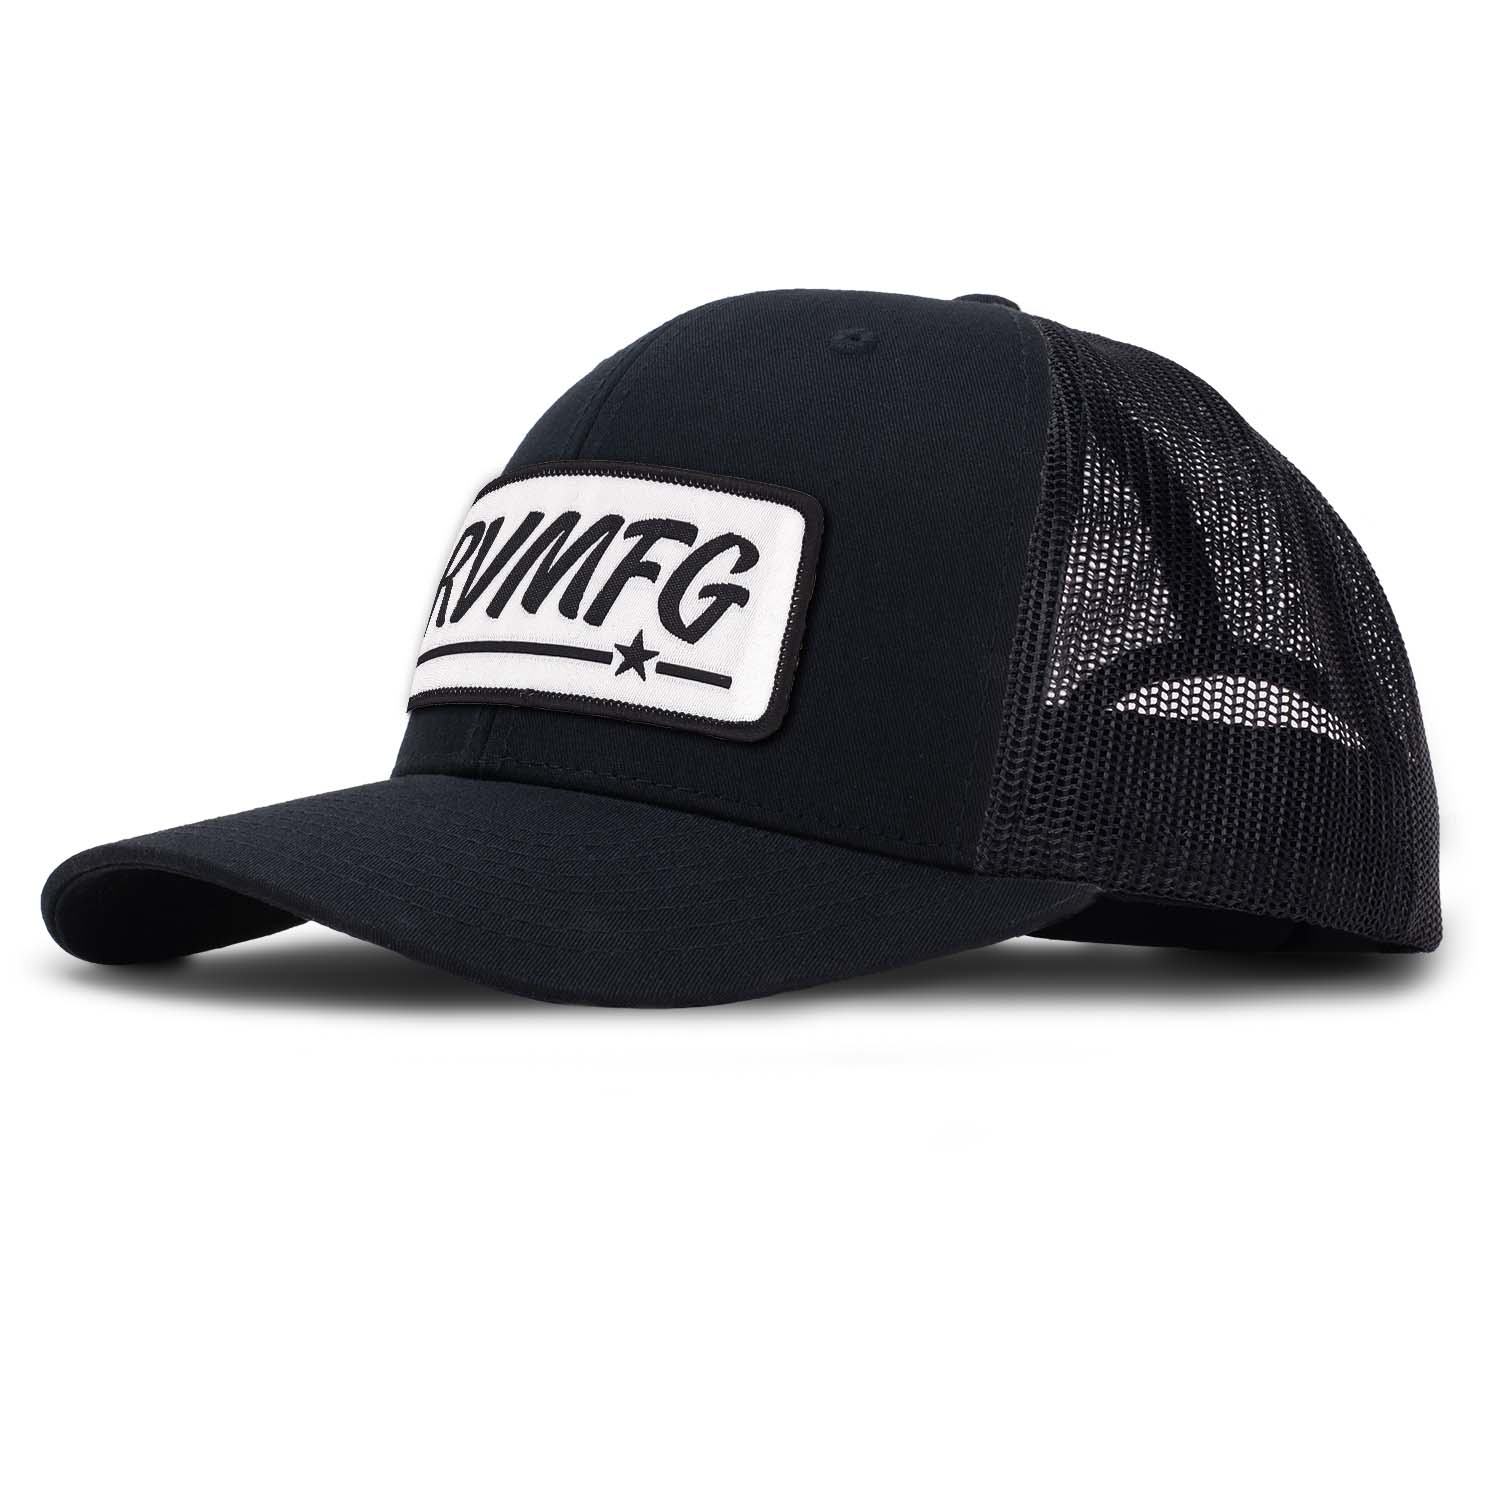 Shop | RVMFG Classic Trucker Hat - Black | Revolution Mfg